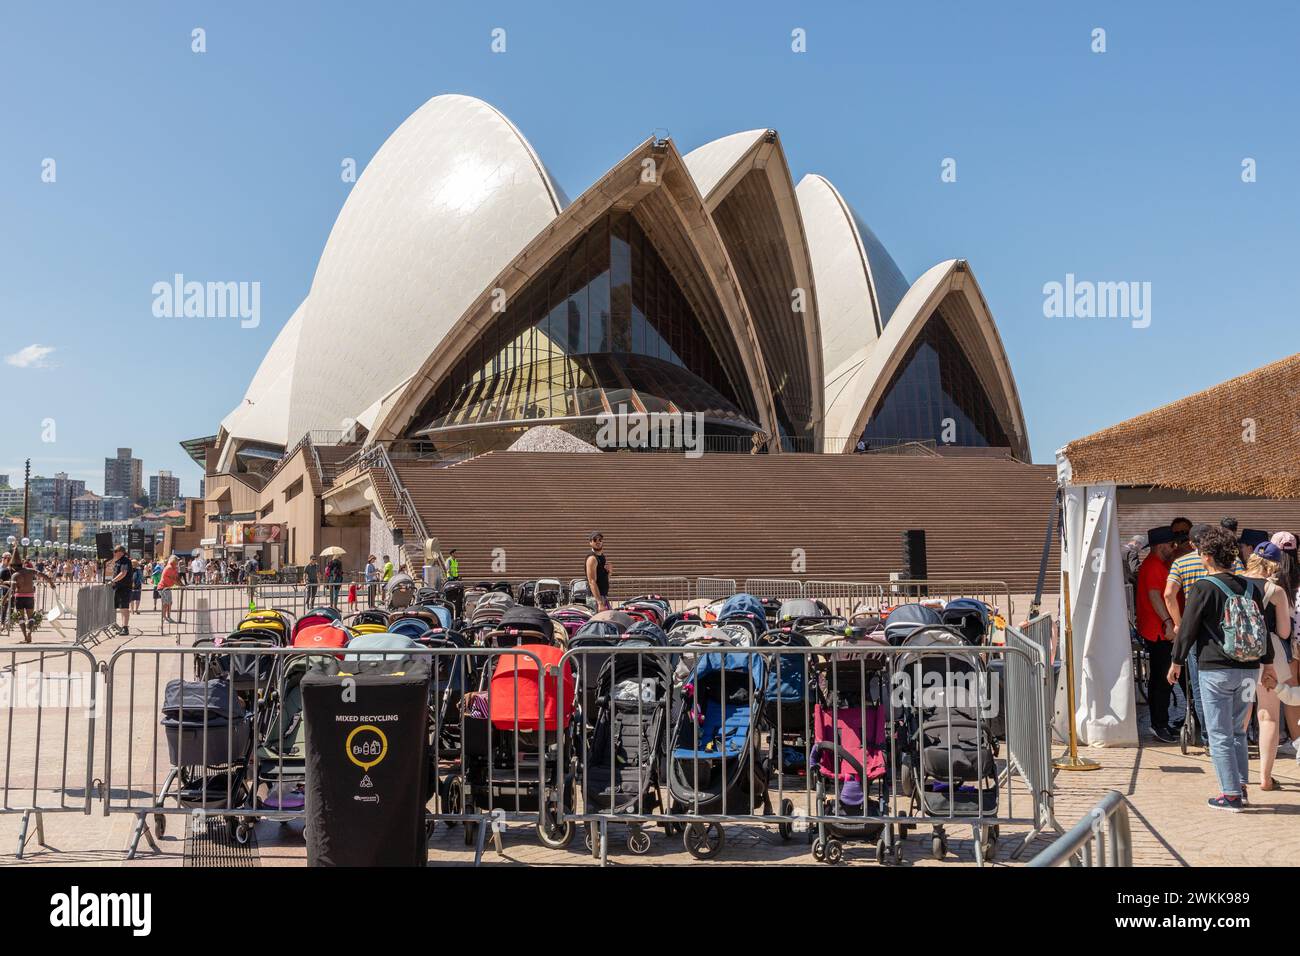 L'emblématique opéra de Sydney, un monument dominant de la ville depuis son ouverture en 1973, a célébré son 50e anniversaire avec un week-end de portes ouvertes bondées. Banque D'Images